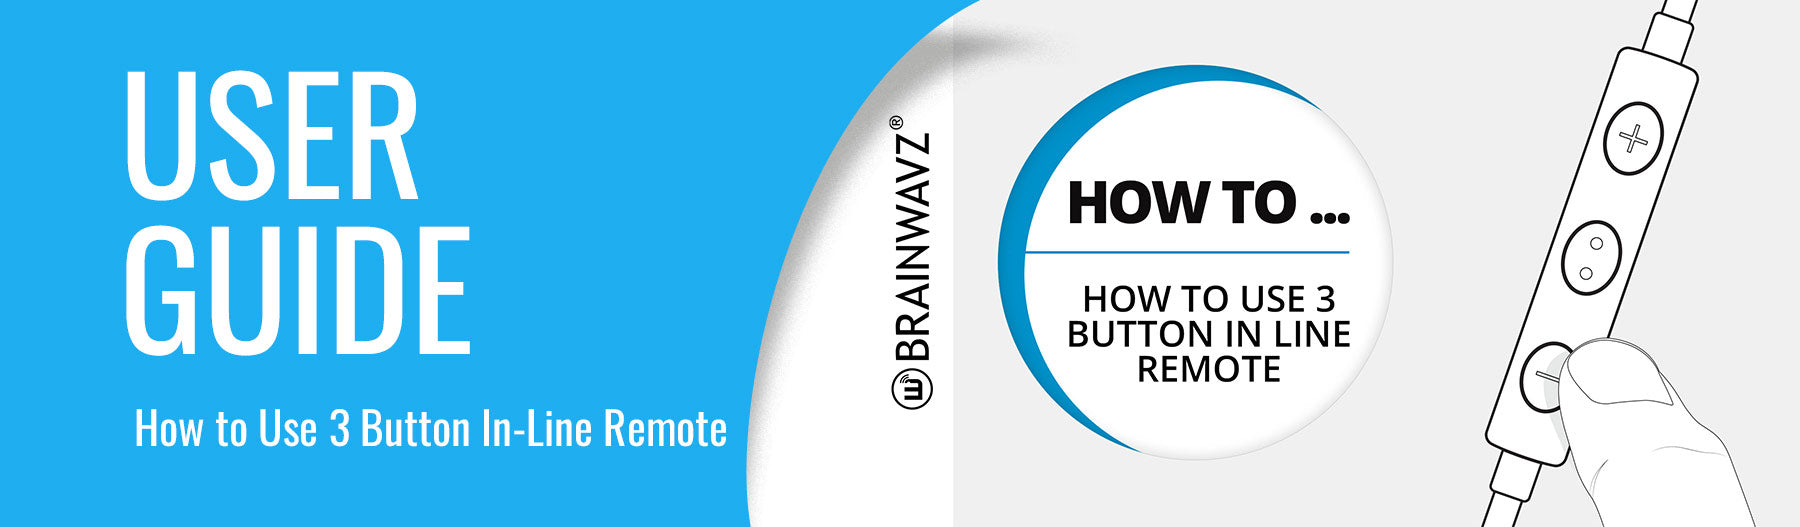 User guide for Brainwavz 3 button remote